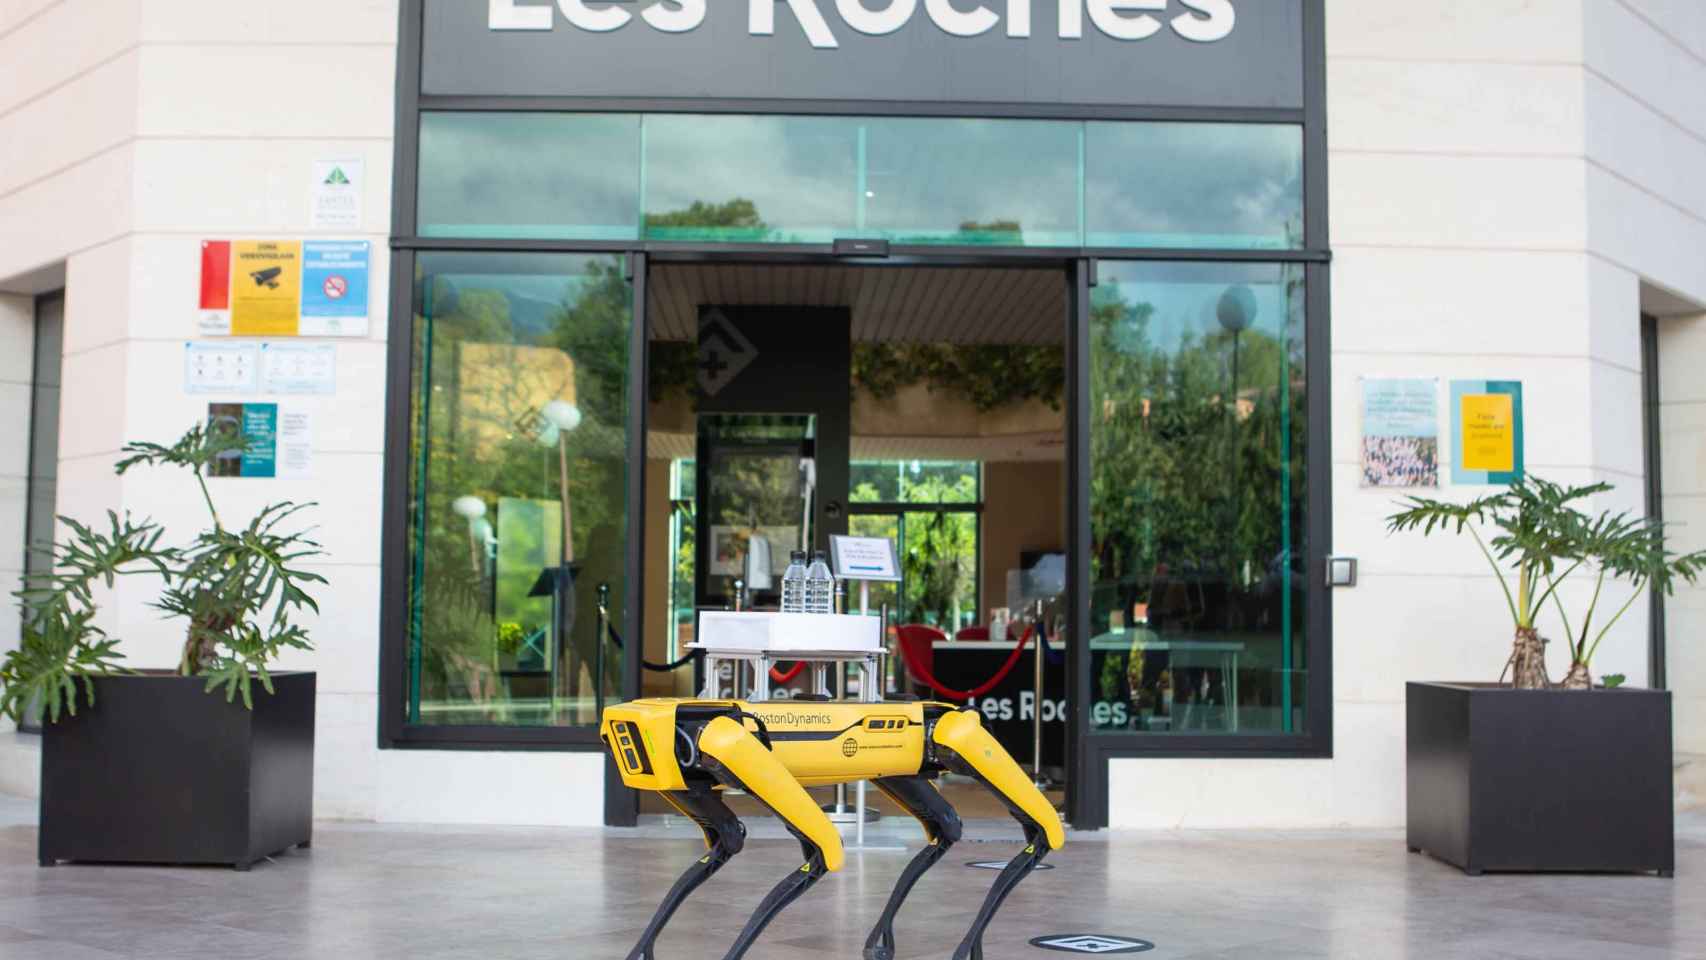 Les Roches Marbella impulsa en FITUR 2022 su proyecto de innovación en hospitality Spark.